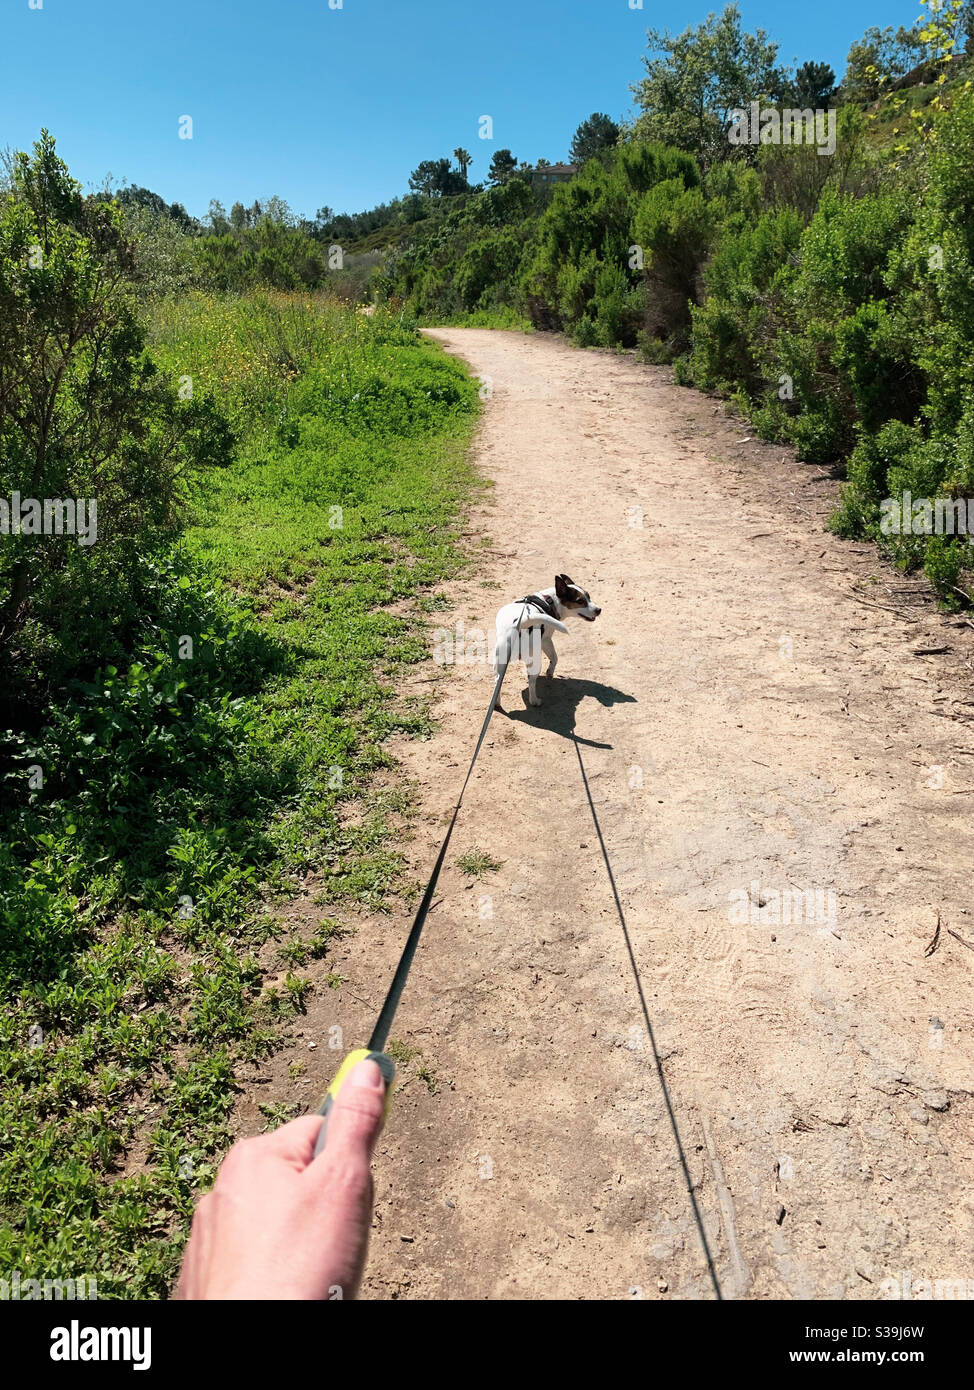 POV der Frau Hand hält an der Leine mit einem kleinen Hund den Weg auf einer Spur unter einem blauen Himmel. Stockfoto